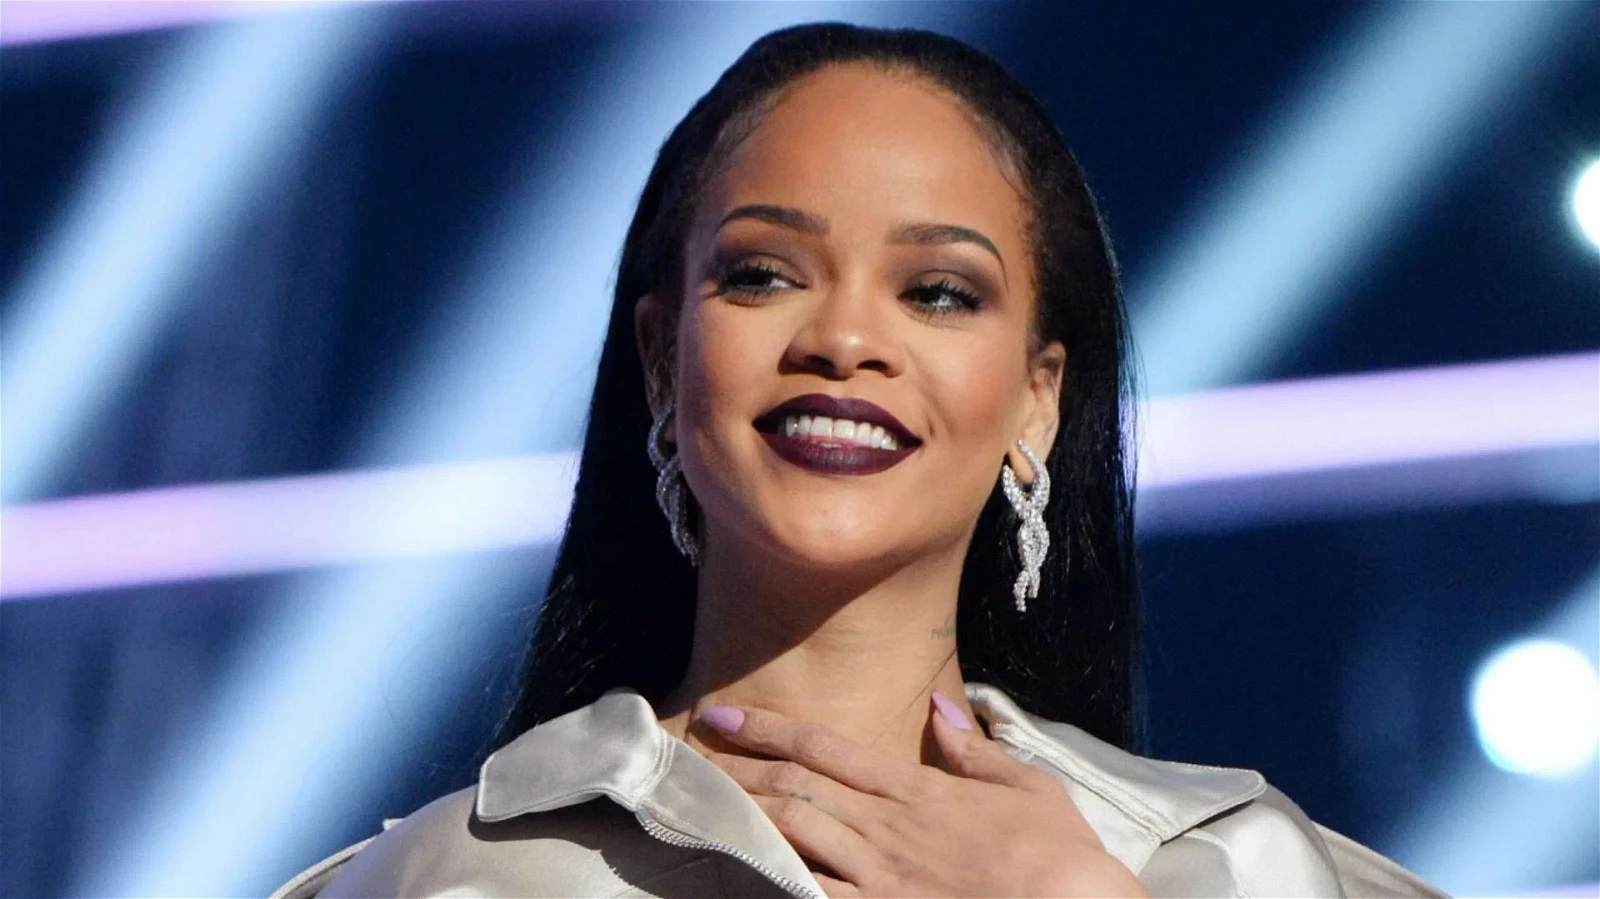 Rihanna will lead Super Bowl 2023